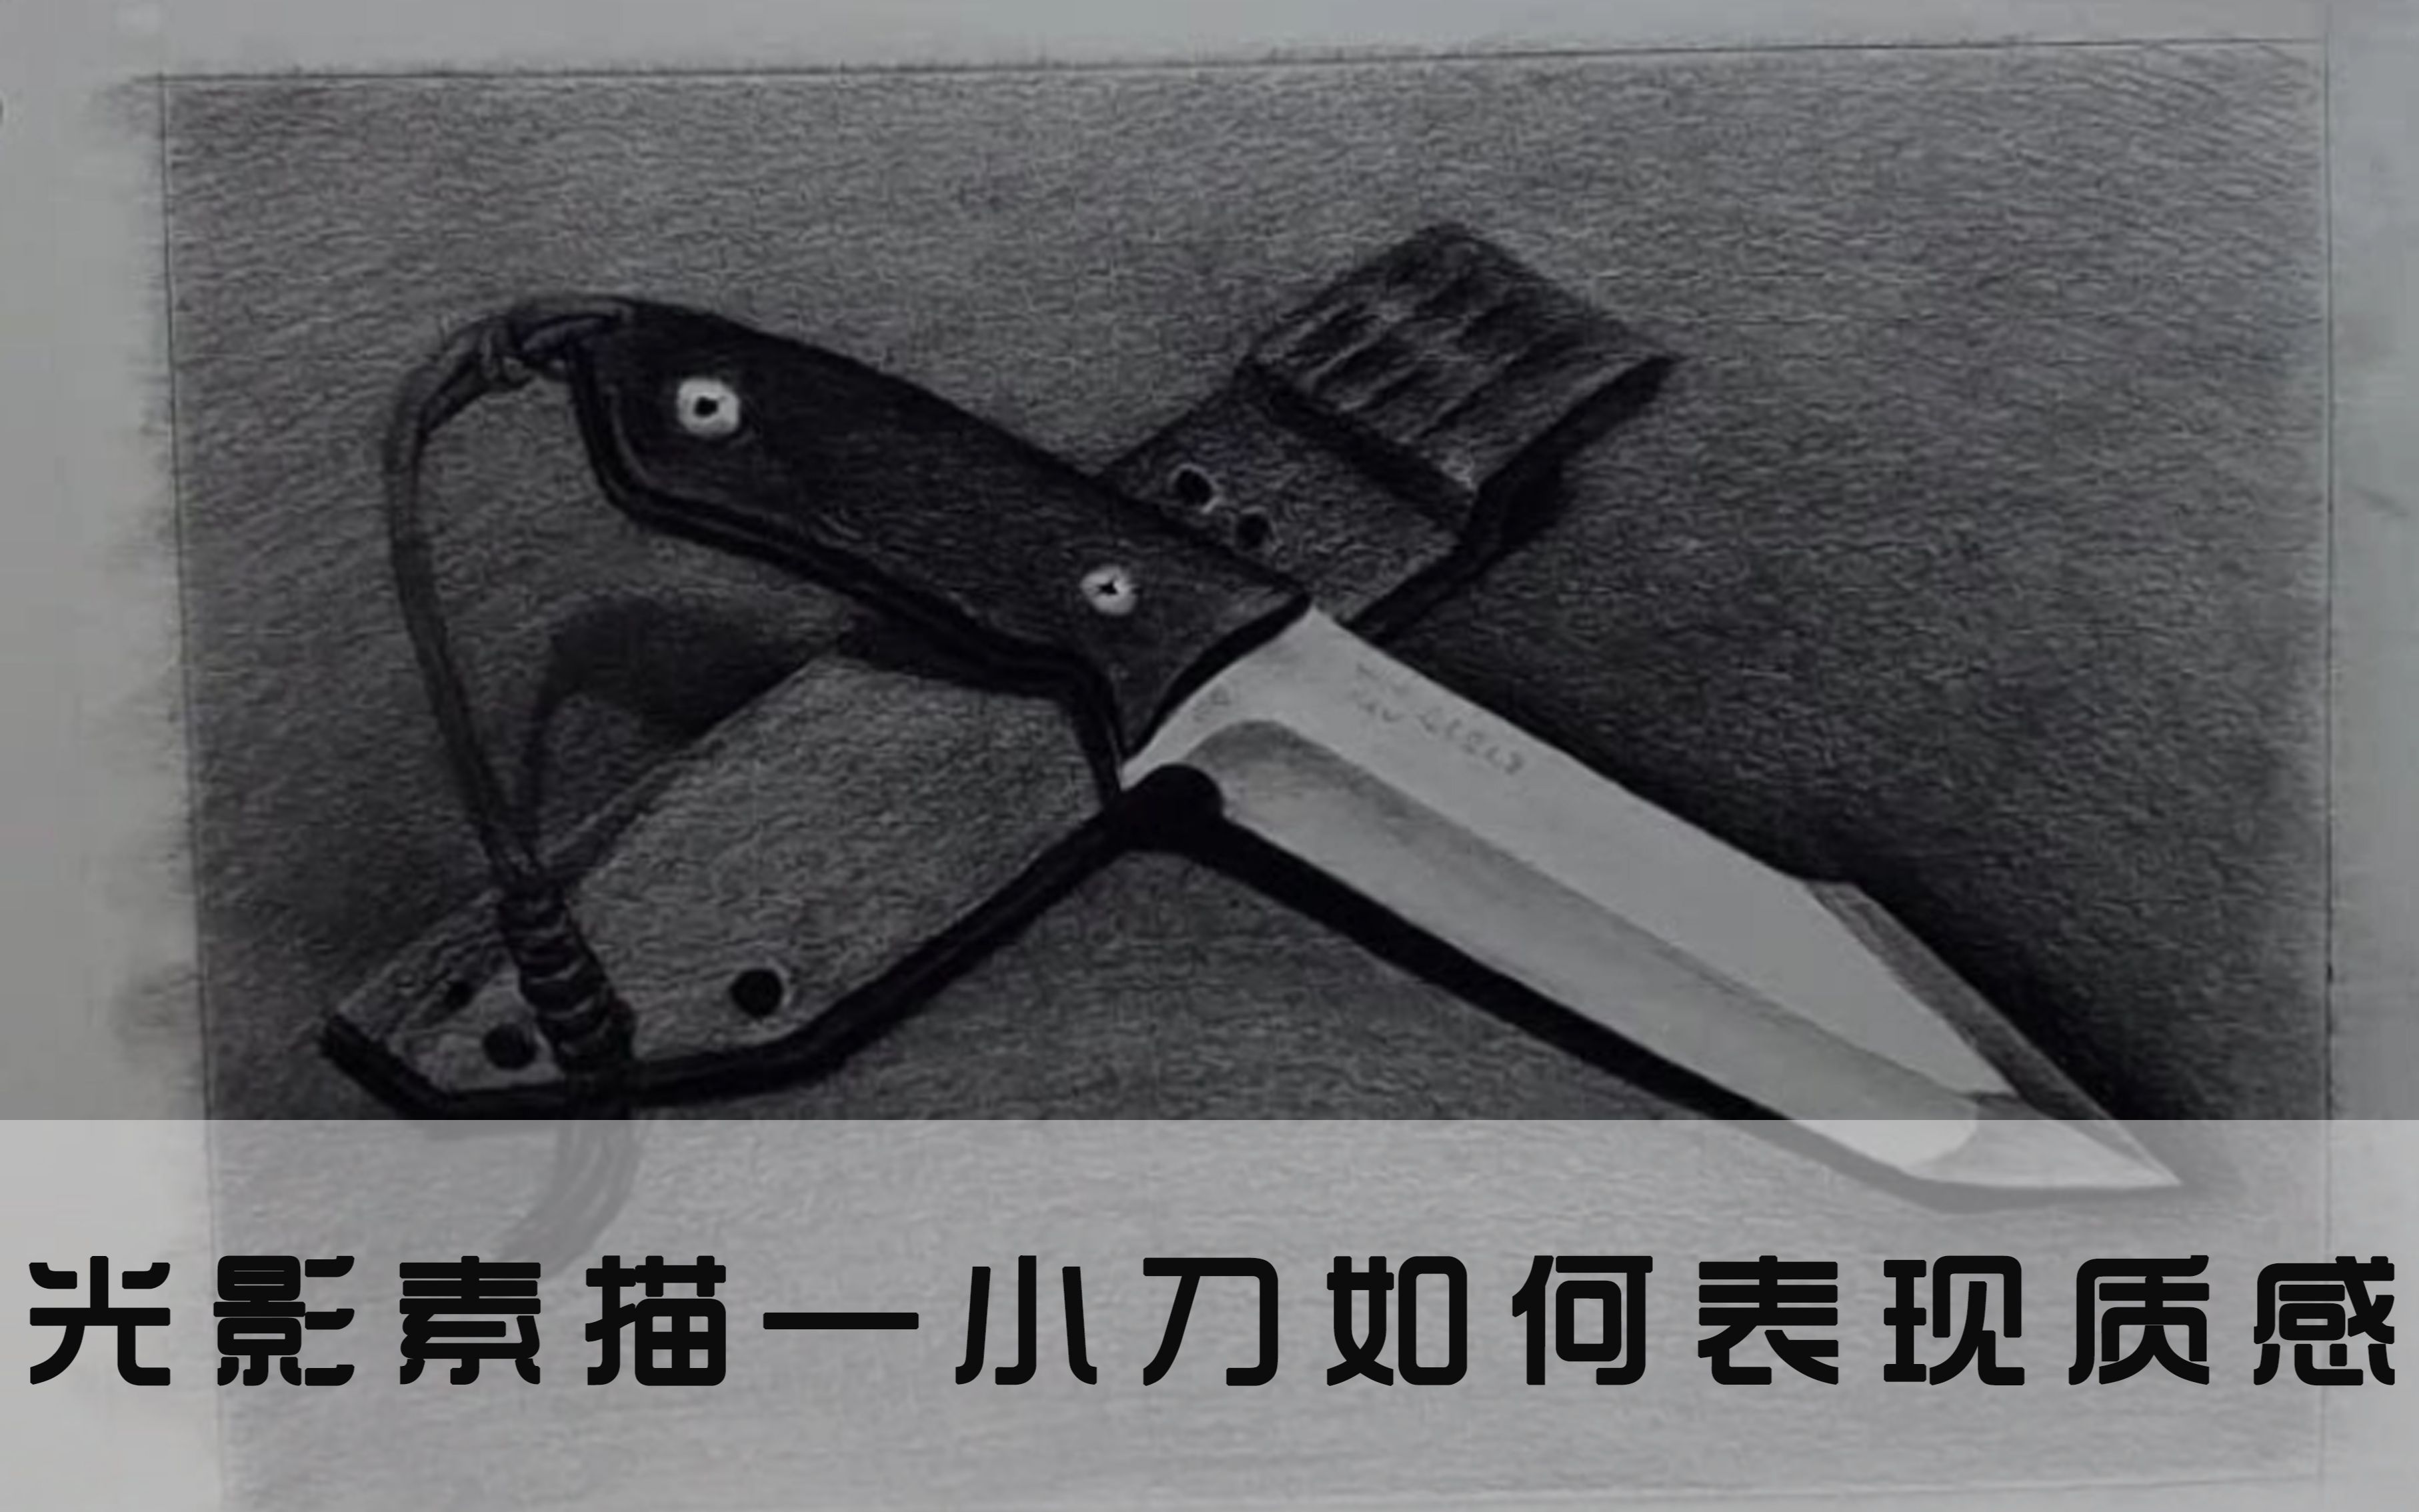 【素描】不锈钢刀具的质感怎么表现?怎么画才能使刀变得锋利?